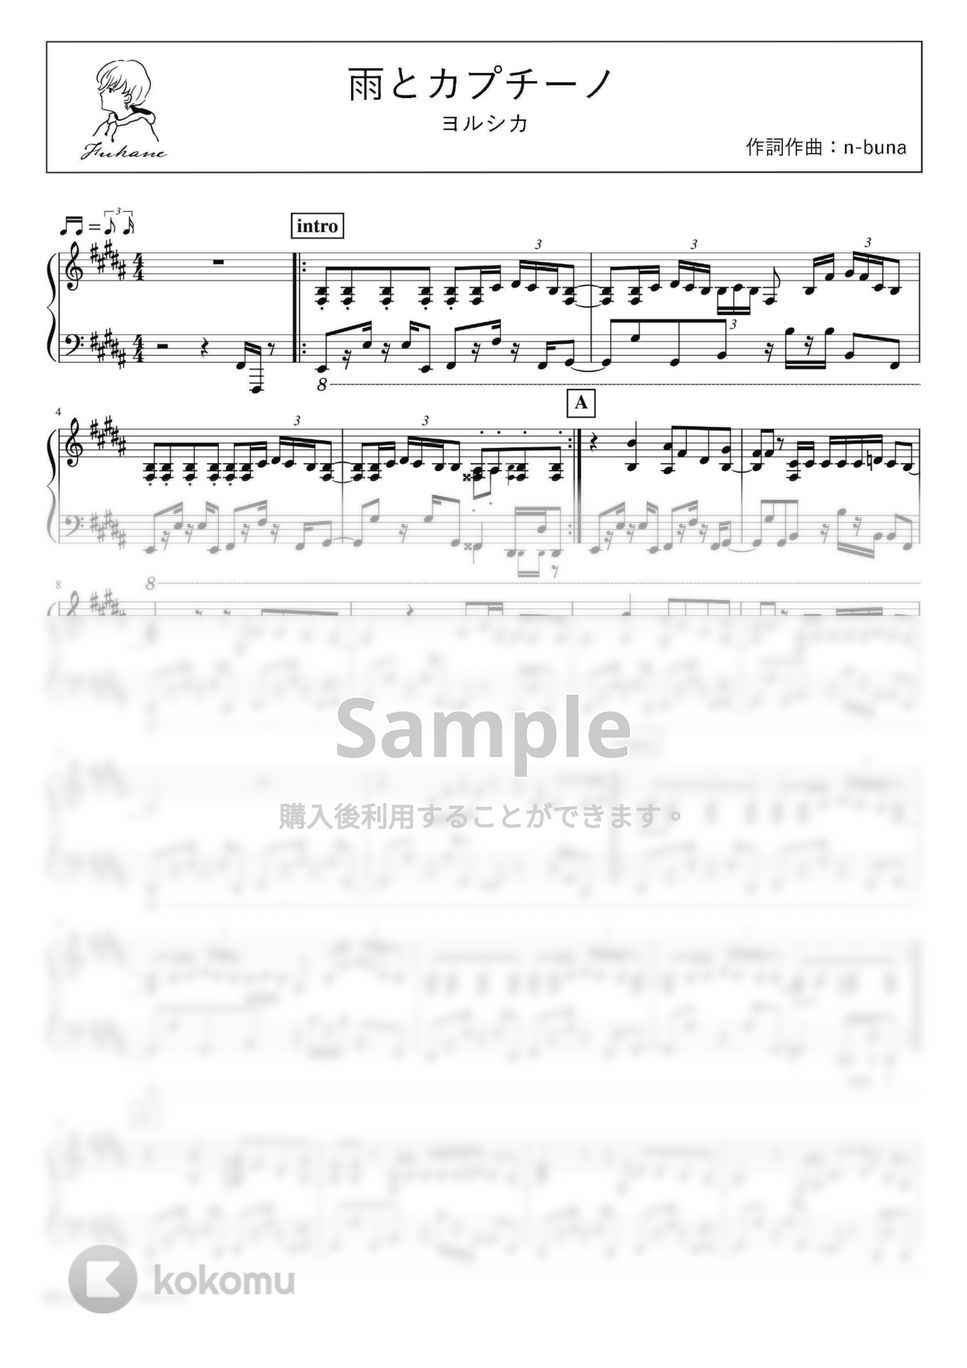 ヨルシカ - 雨とカプチーノ (PianoSolo) by 深根 / Fukane